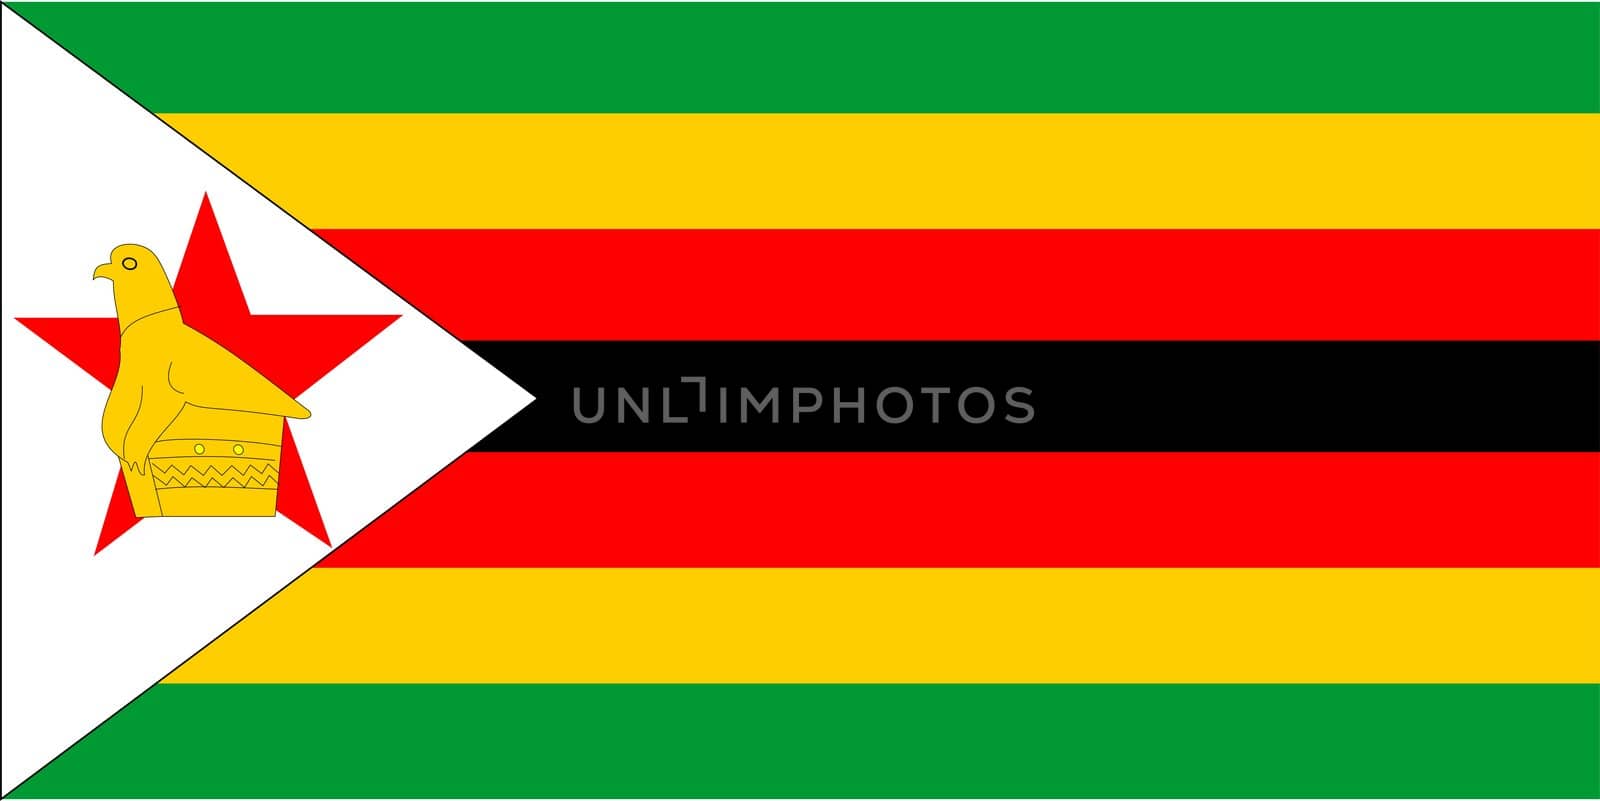 2D illustration of the flag of Zimbabwe